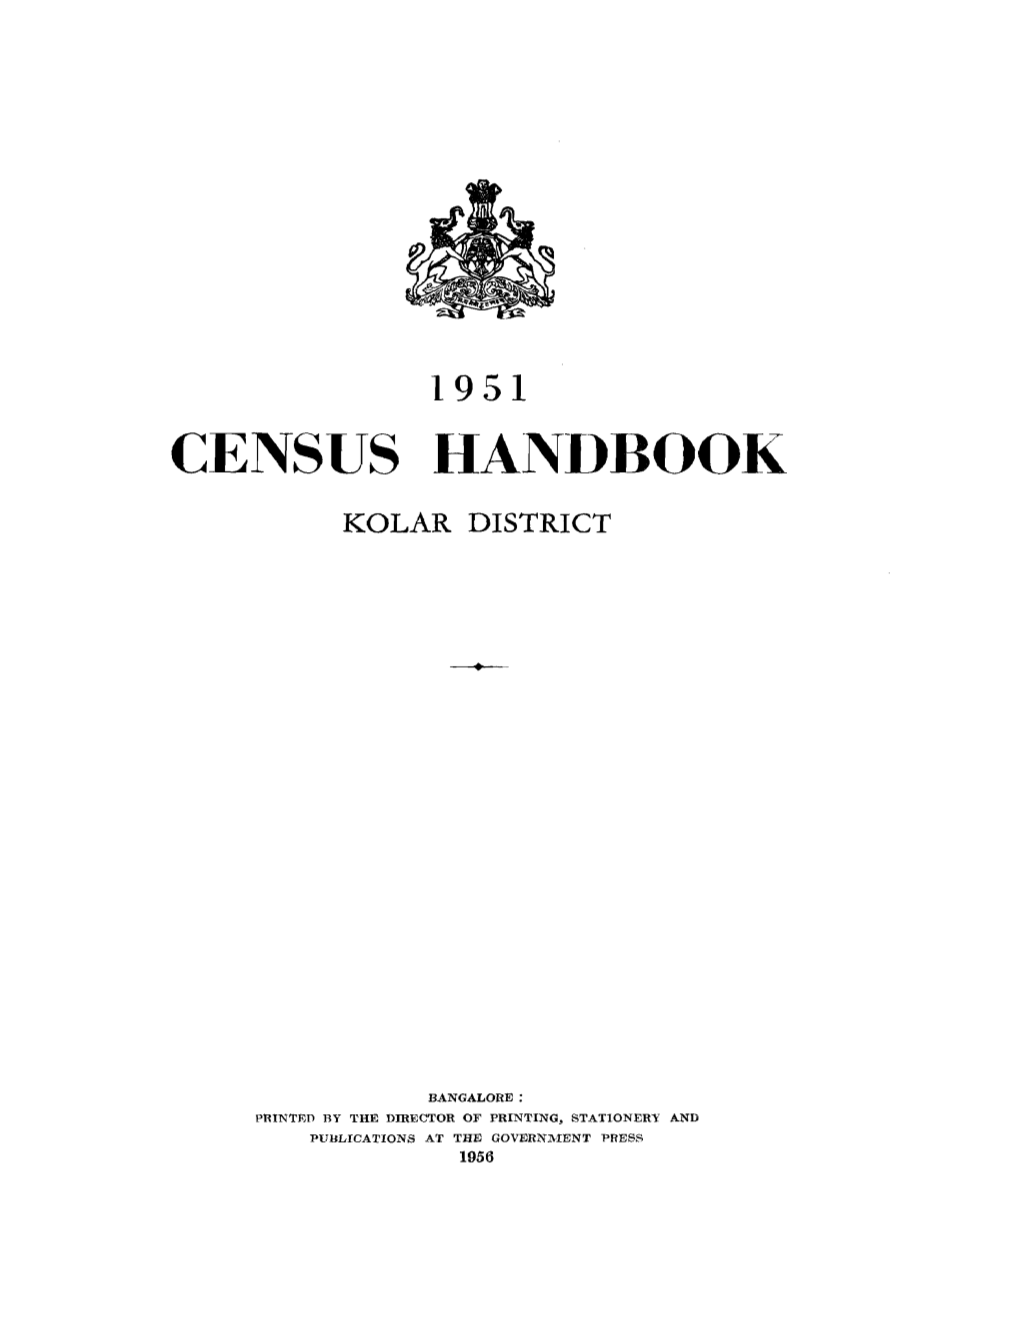 Census Handbook, Kolar